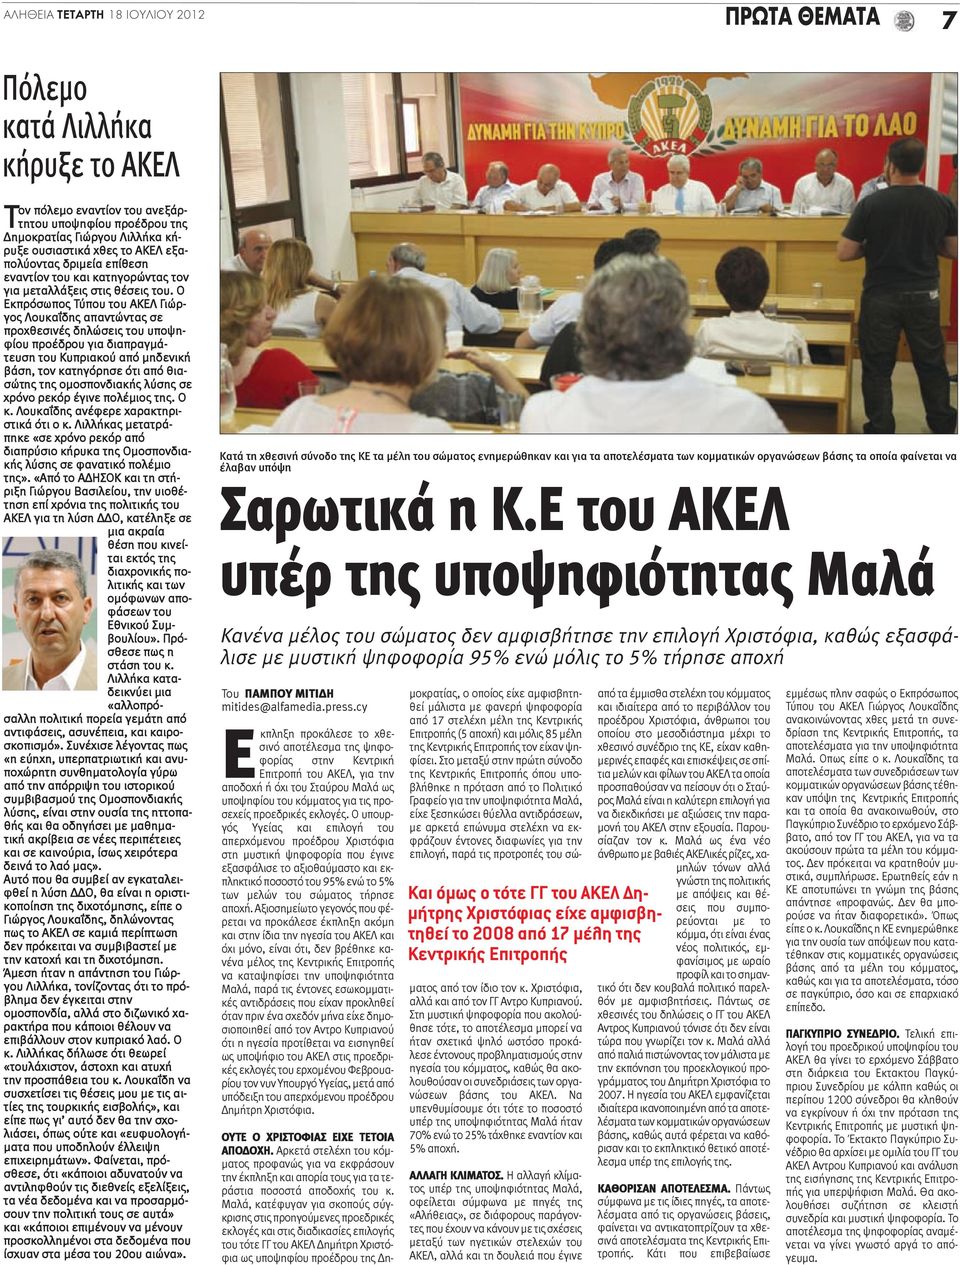 Ο Εκπρόσωπος Τύπου του ΑΚΕΛ Γιώργος Λουκαΐδης απαντώντας σε προχθεσινές δηλώσεις του υποψηφίου προέδρου για διαπραγμάτευση του Κυπριακού από μηδενική βάση, τον κατηγόρησε ότι από θιασώτης της